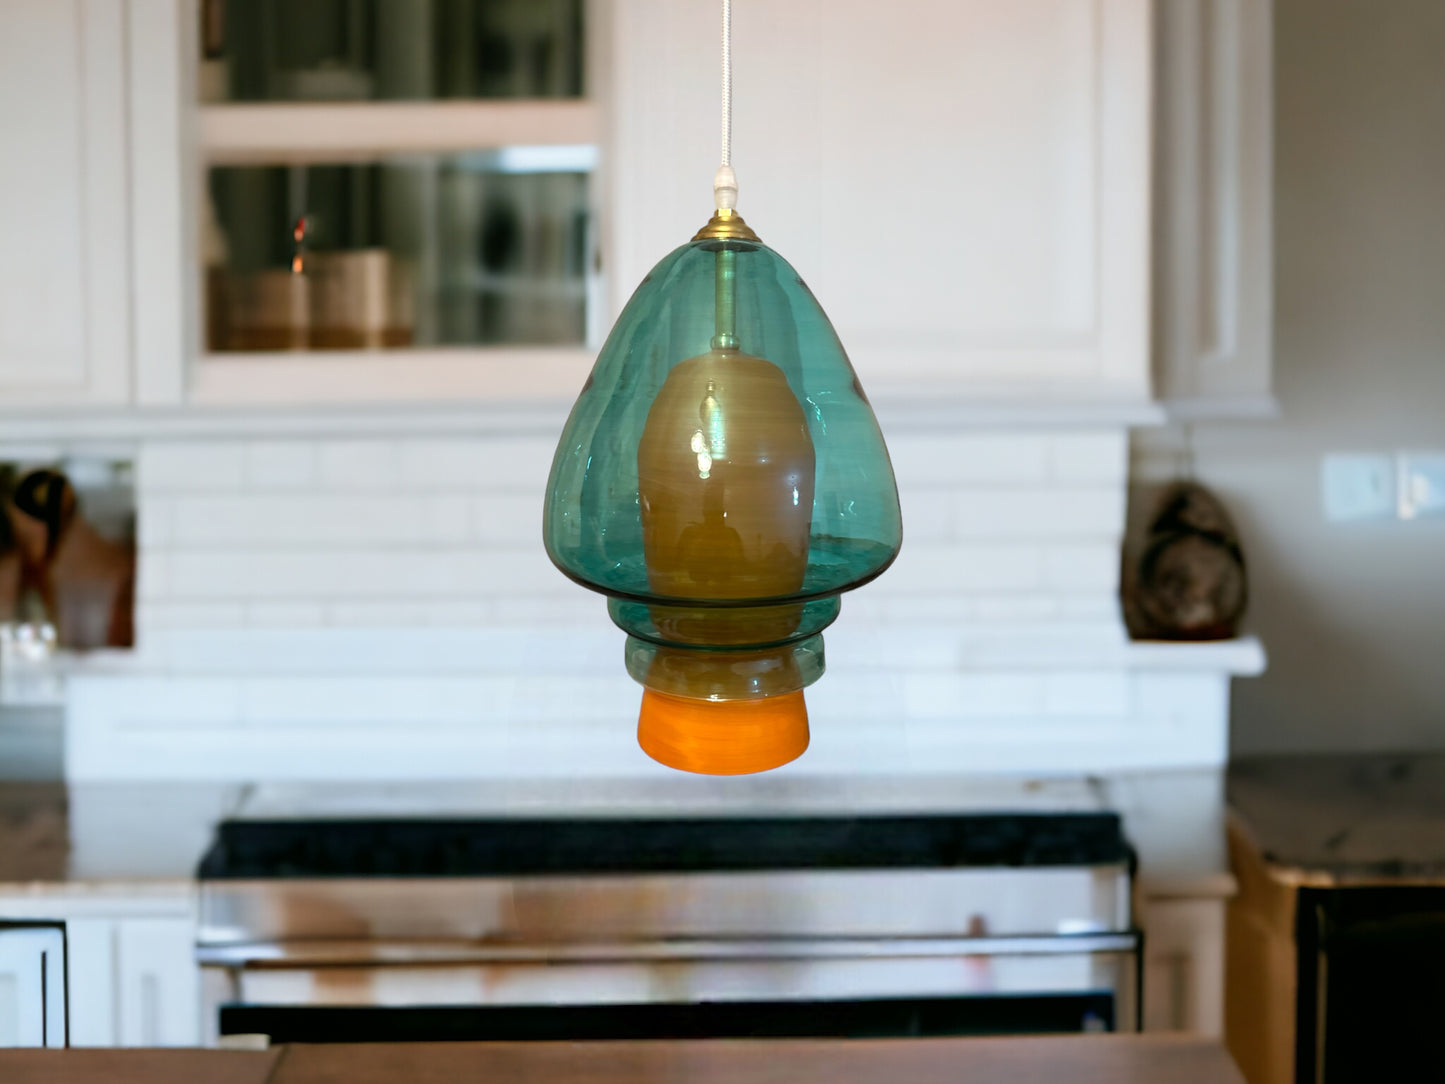 Blown Glass Pendant Light for Kitchen Decor - Les Trois Pyramides